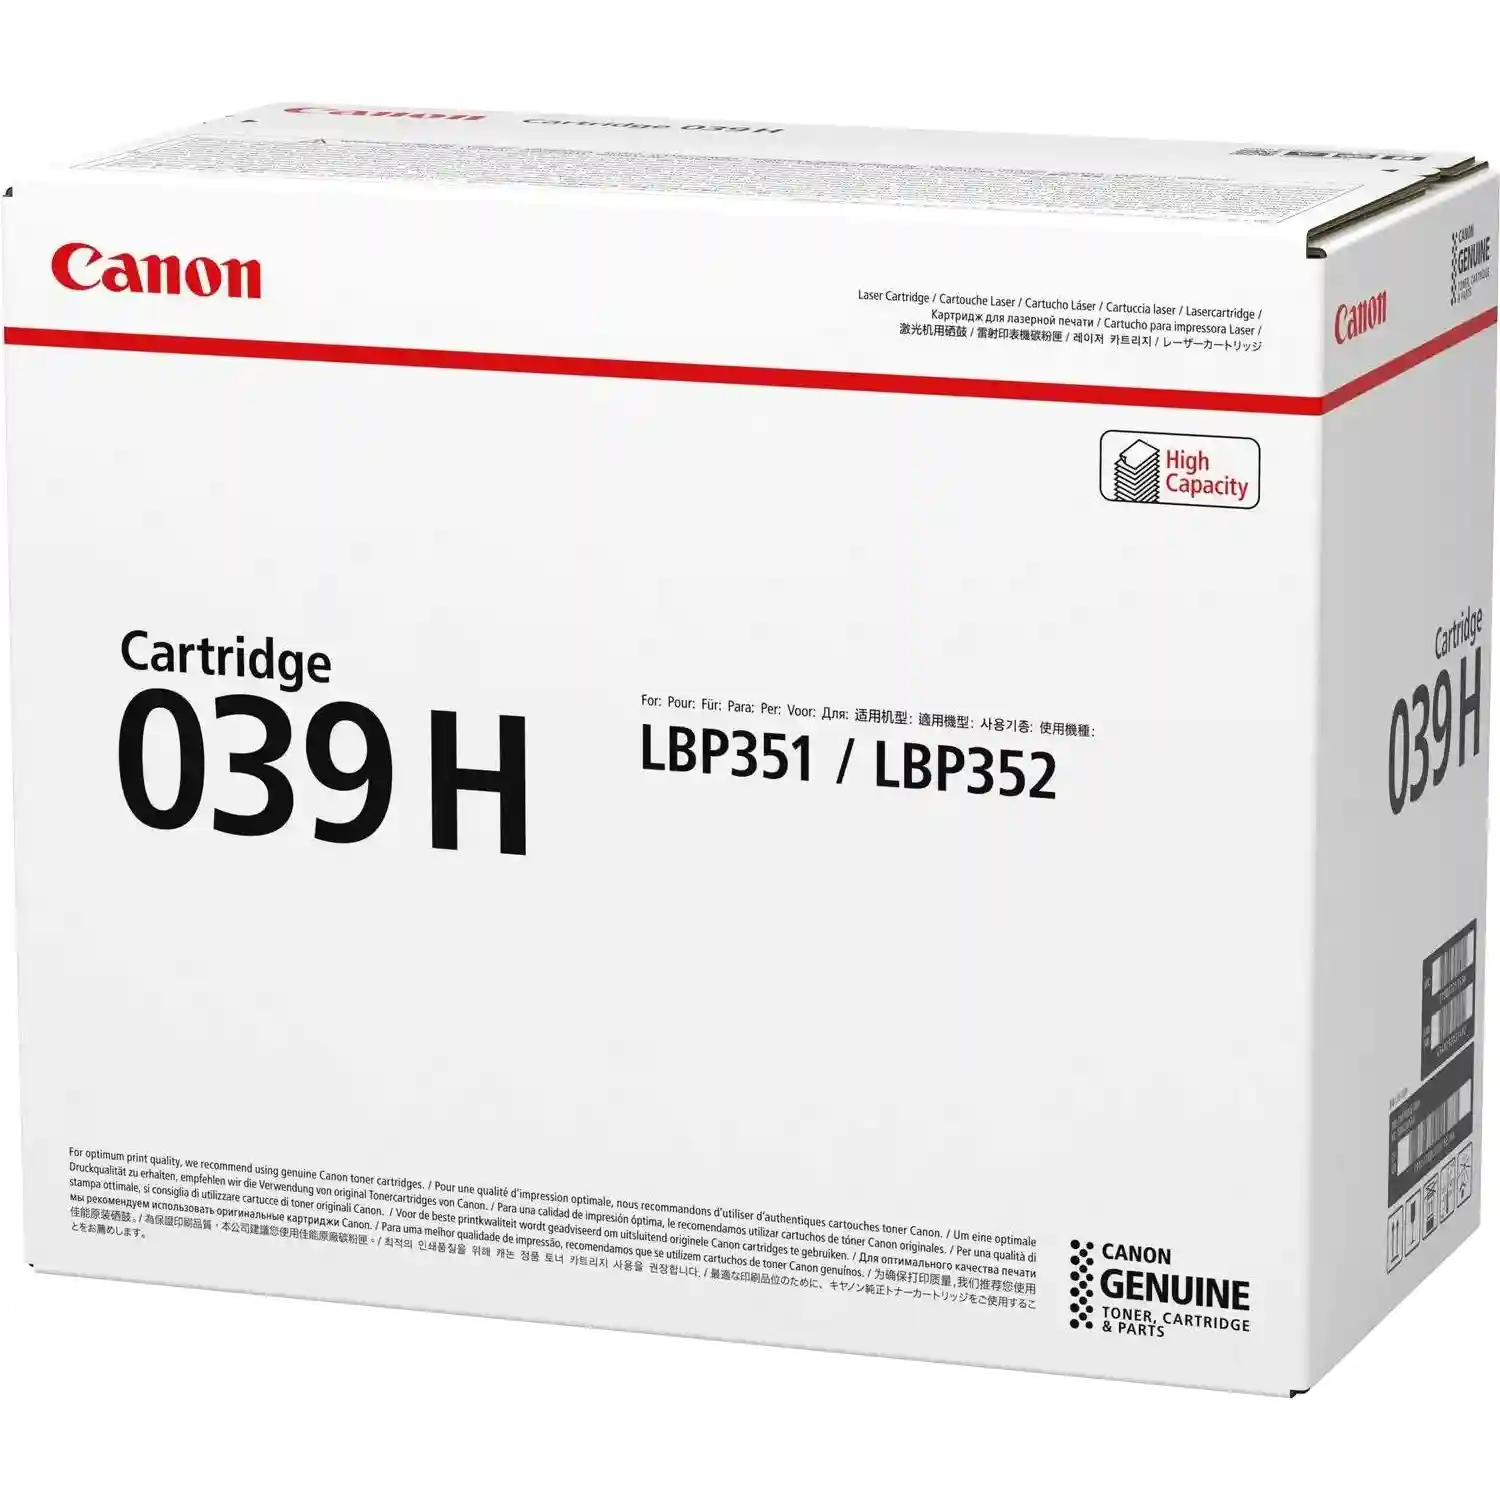 Картридж для лазерного принтера CANON 039 H Black (0288C002)